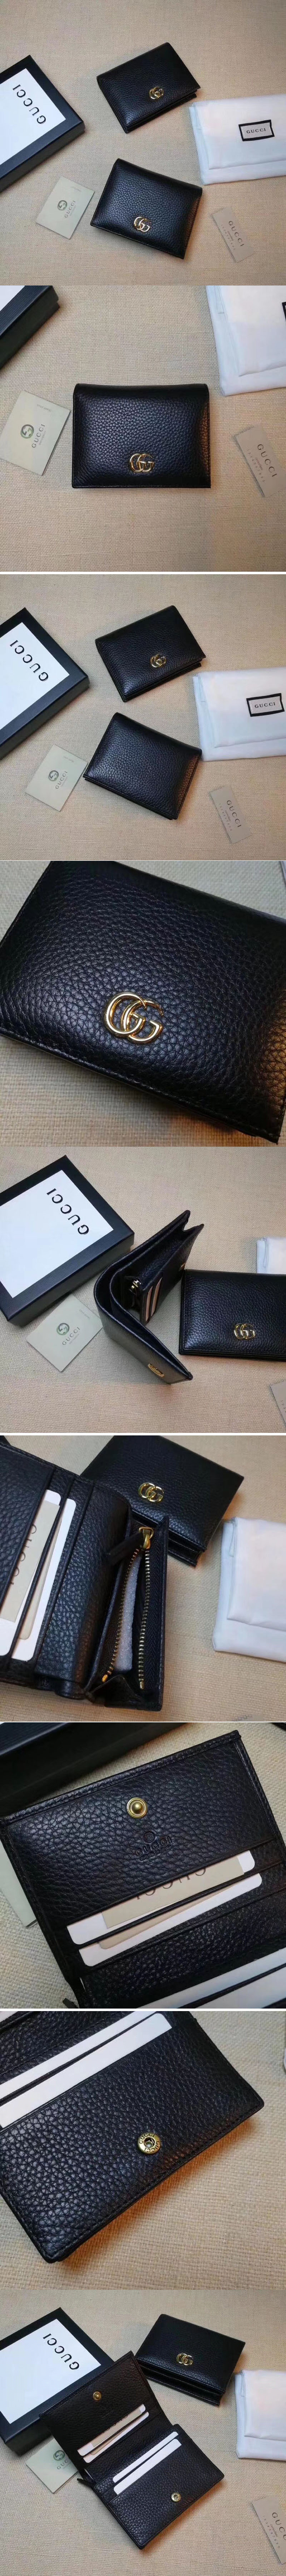 Replica Gucci 456126 Leather card case Wallets Black